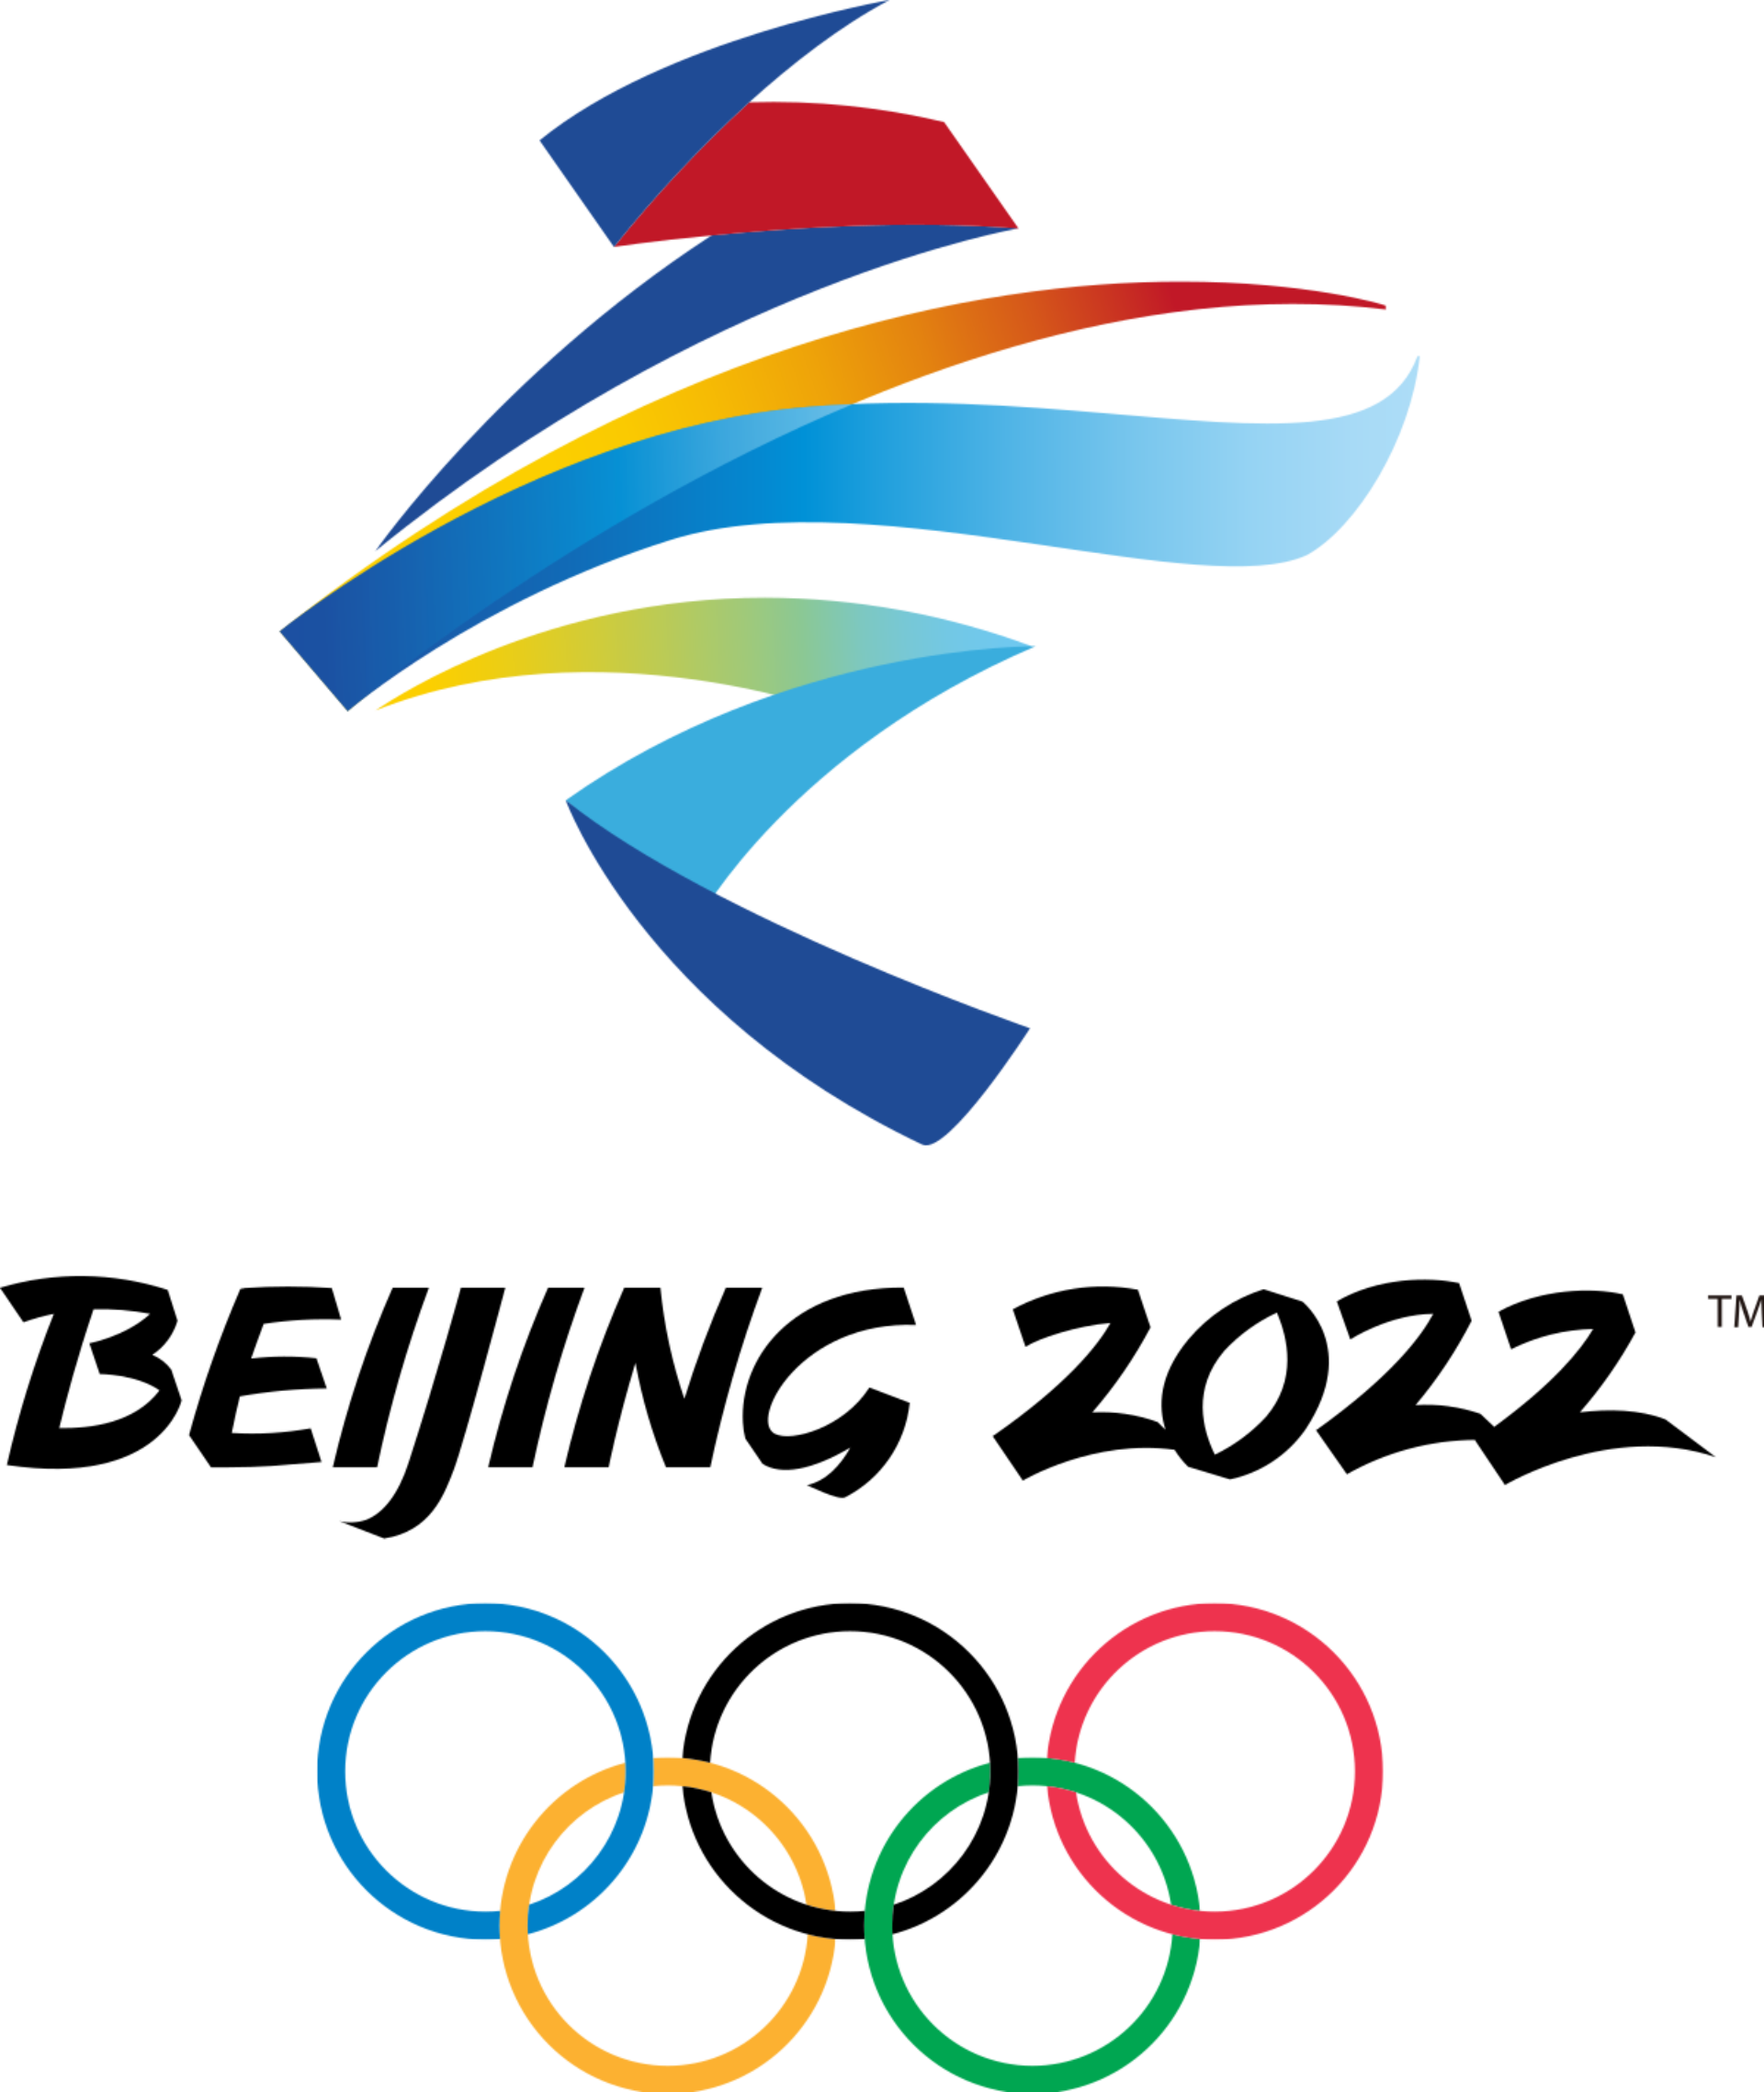 2022 Winter Olympics official logo en svg